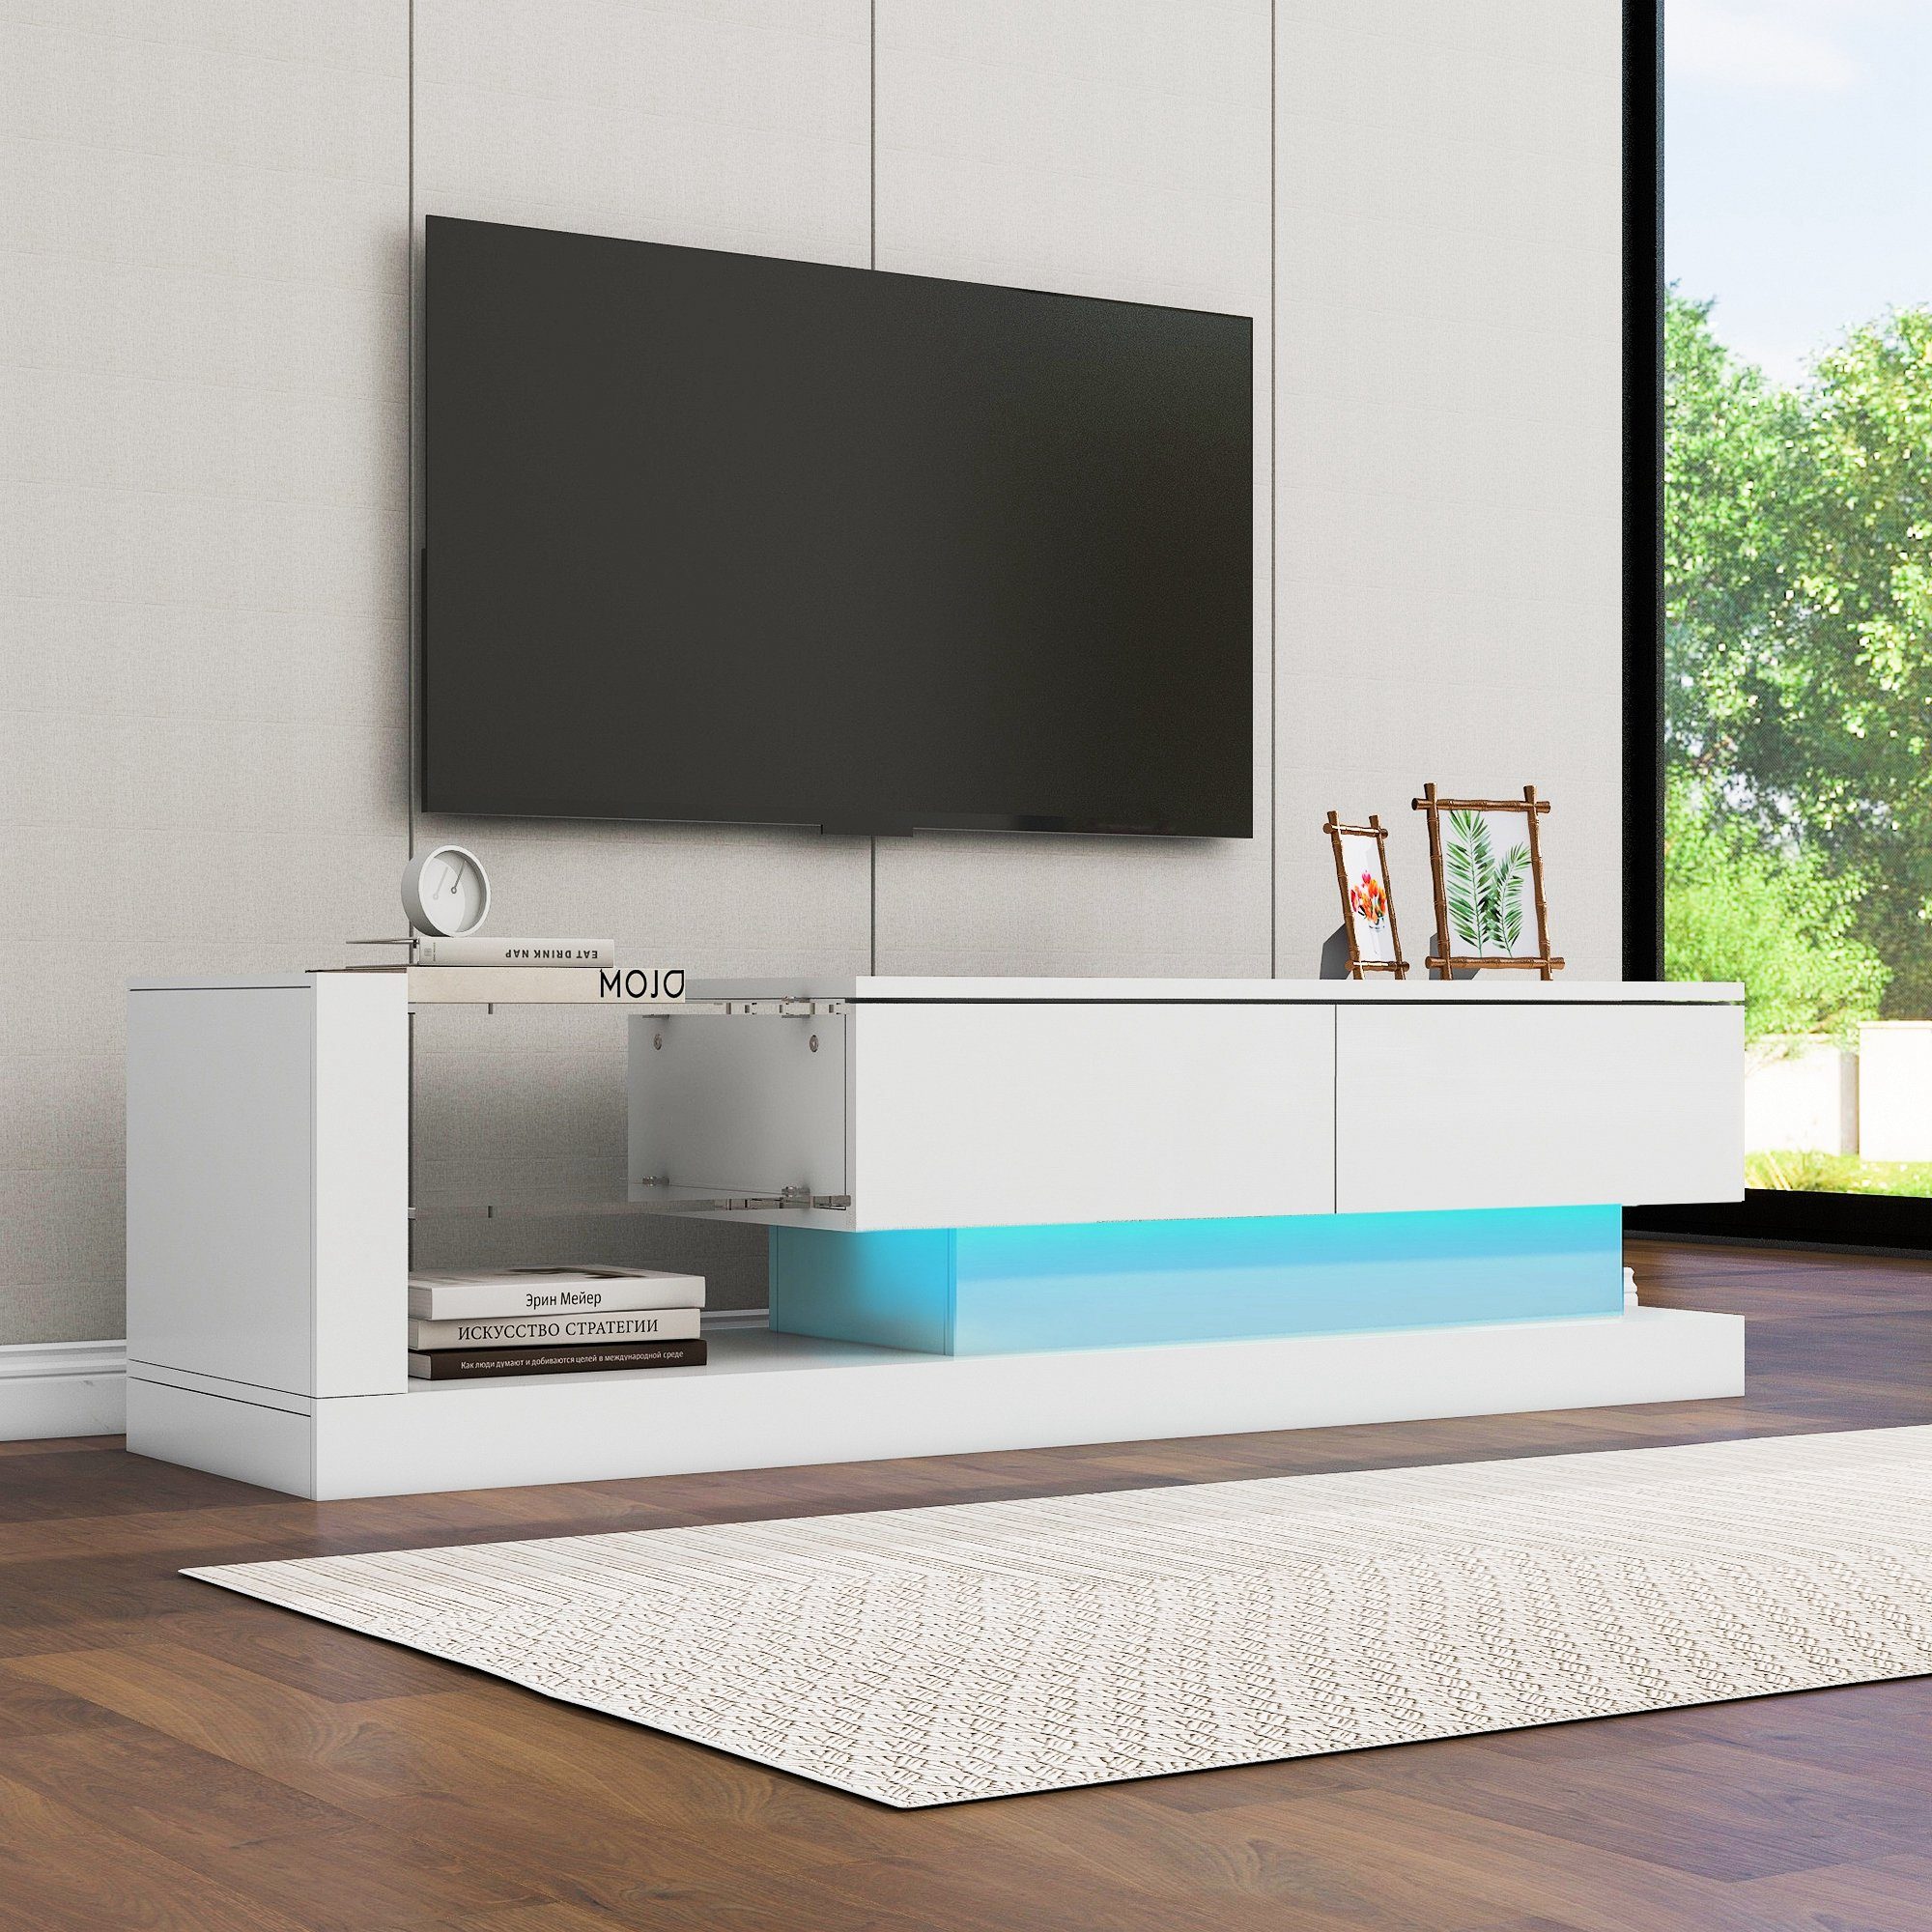 Celya TV-Schrank Stilvoller TV-Schrank - 1,4m lang,LED-Beleuchtung,60 Zoll TV-Fläche